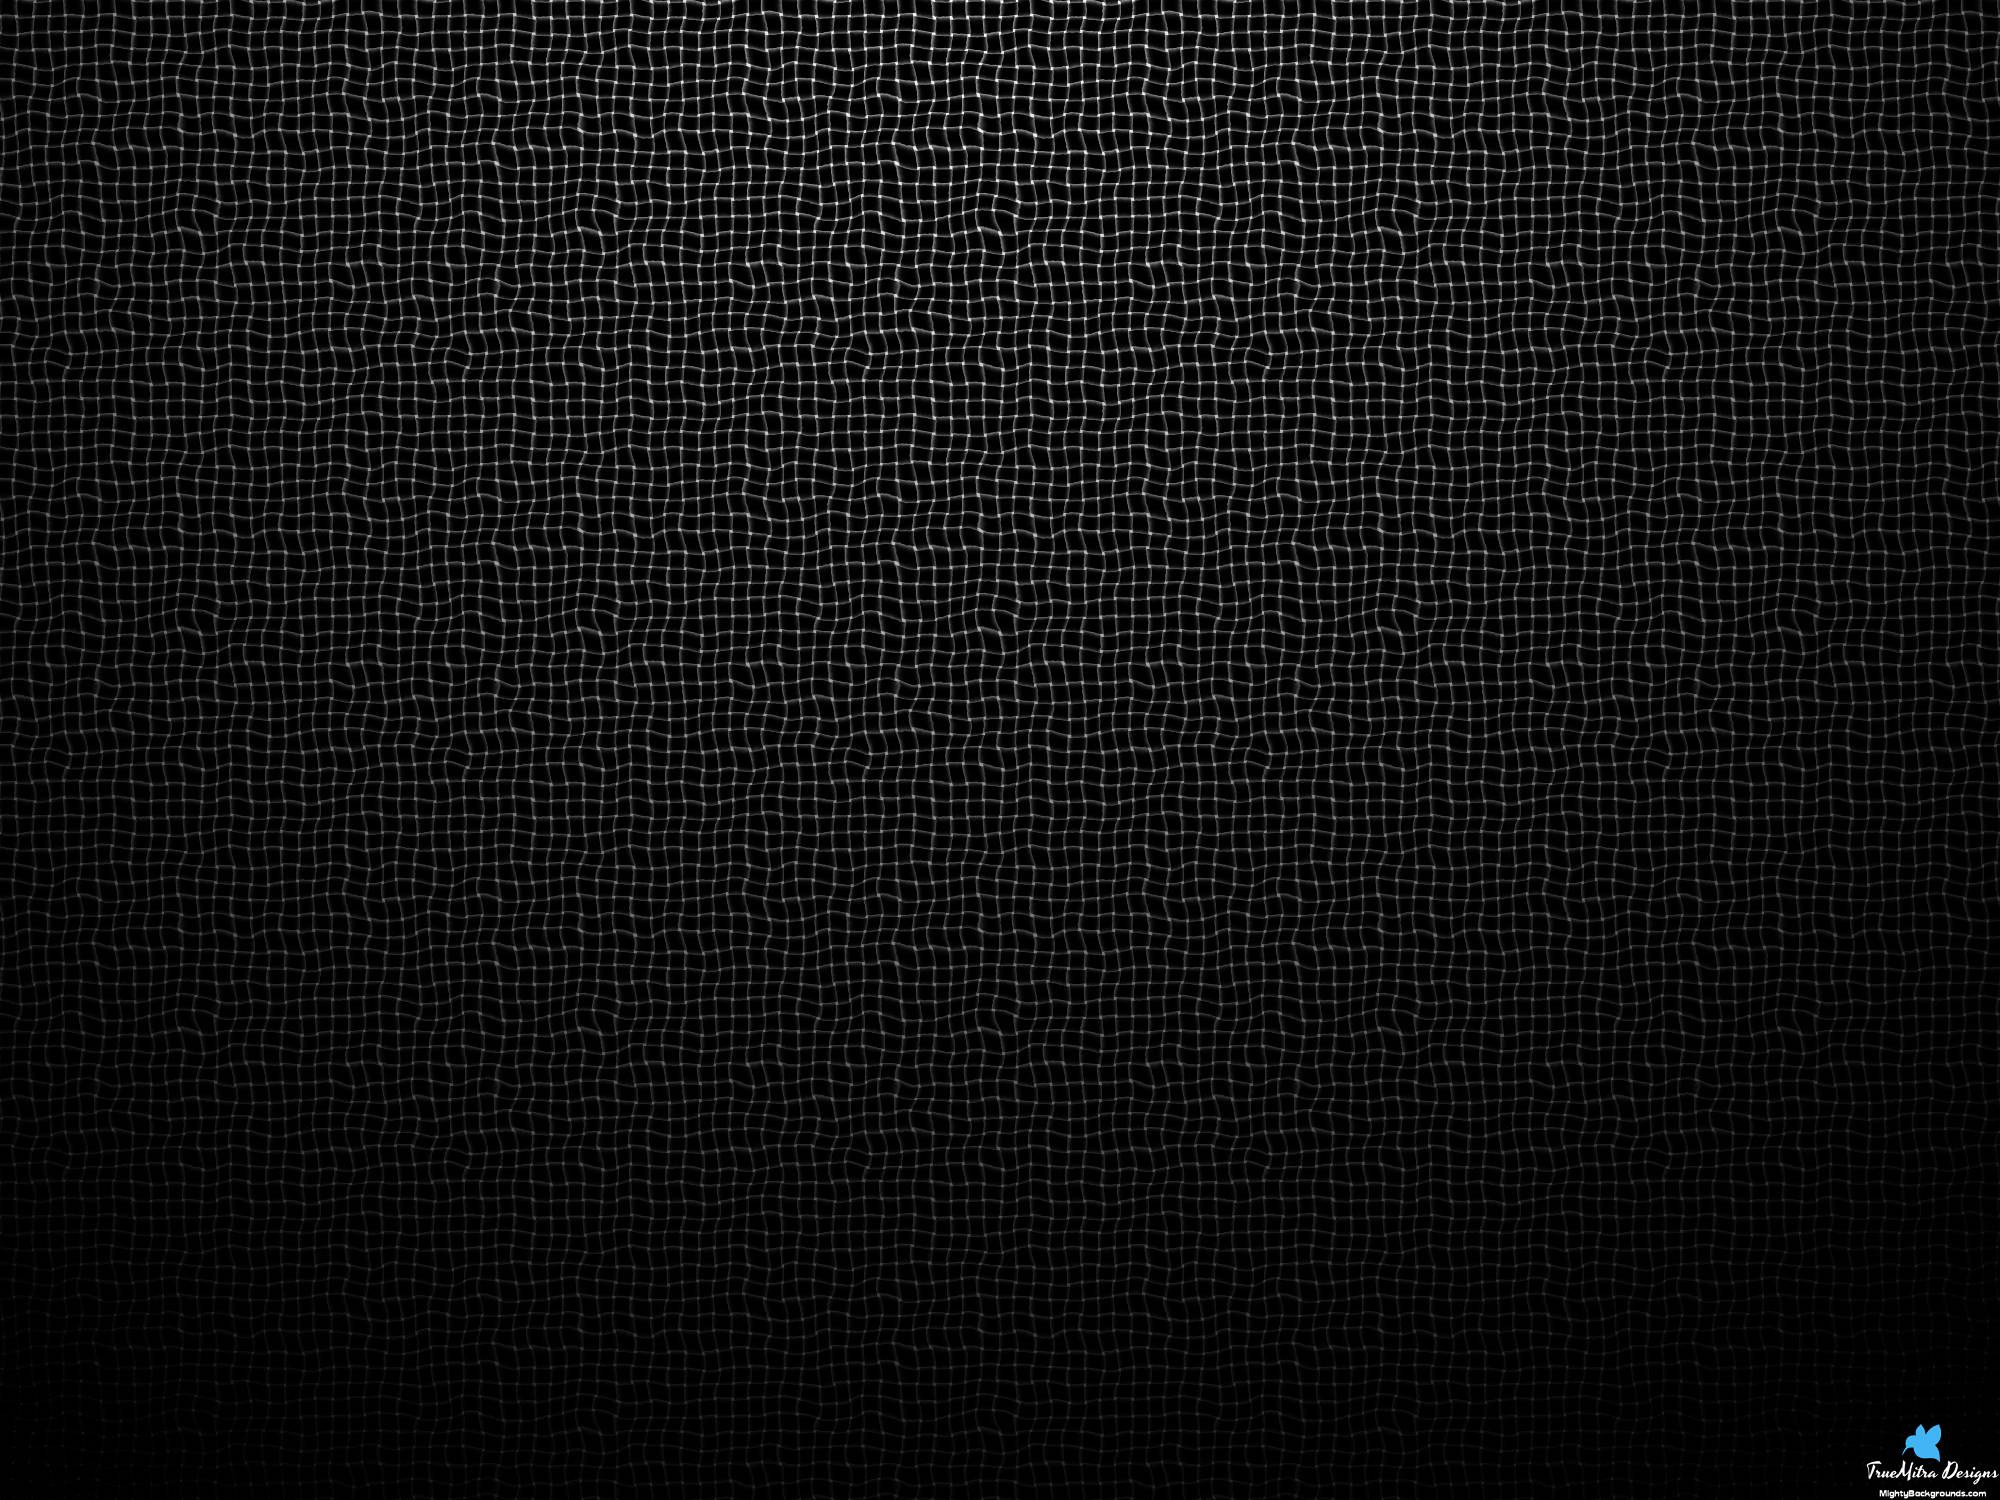 91+] Dark Web Wallpapers - WallpaperSafari